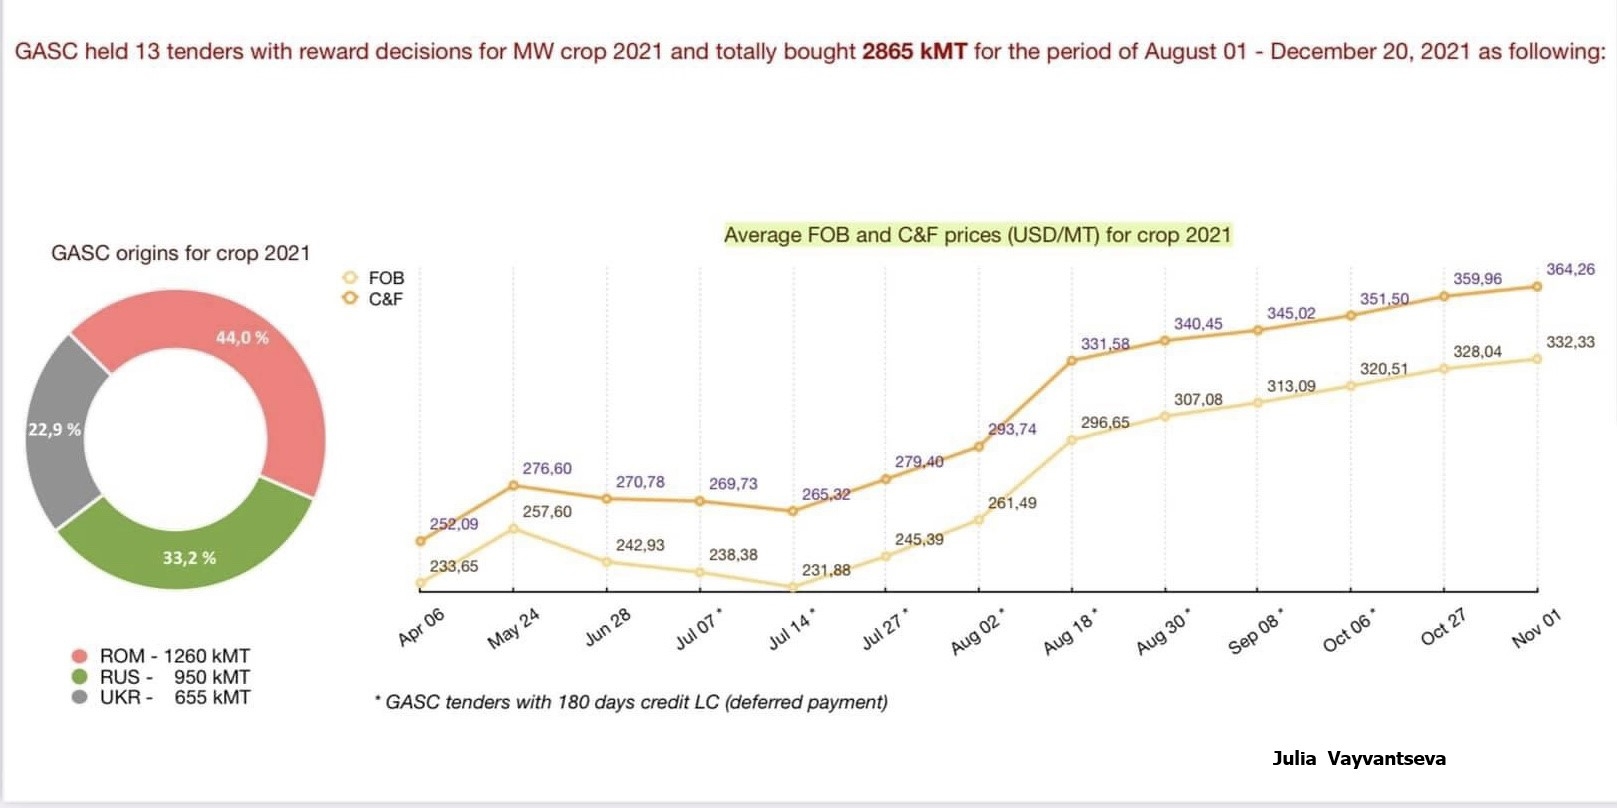 Ціна закупівлі пшениці на тендері в Єгипті за тиждень виросла ще на 4,3 $/т